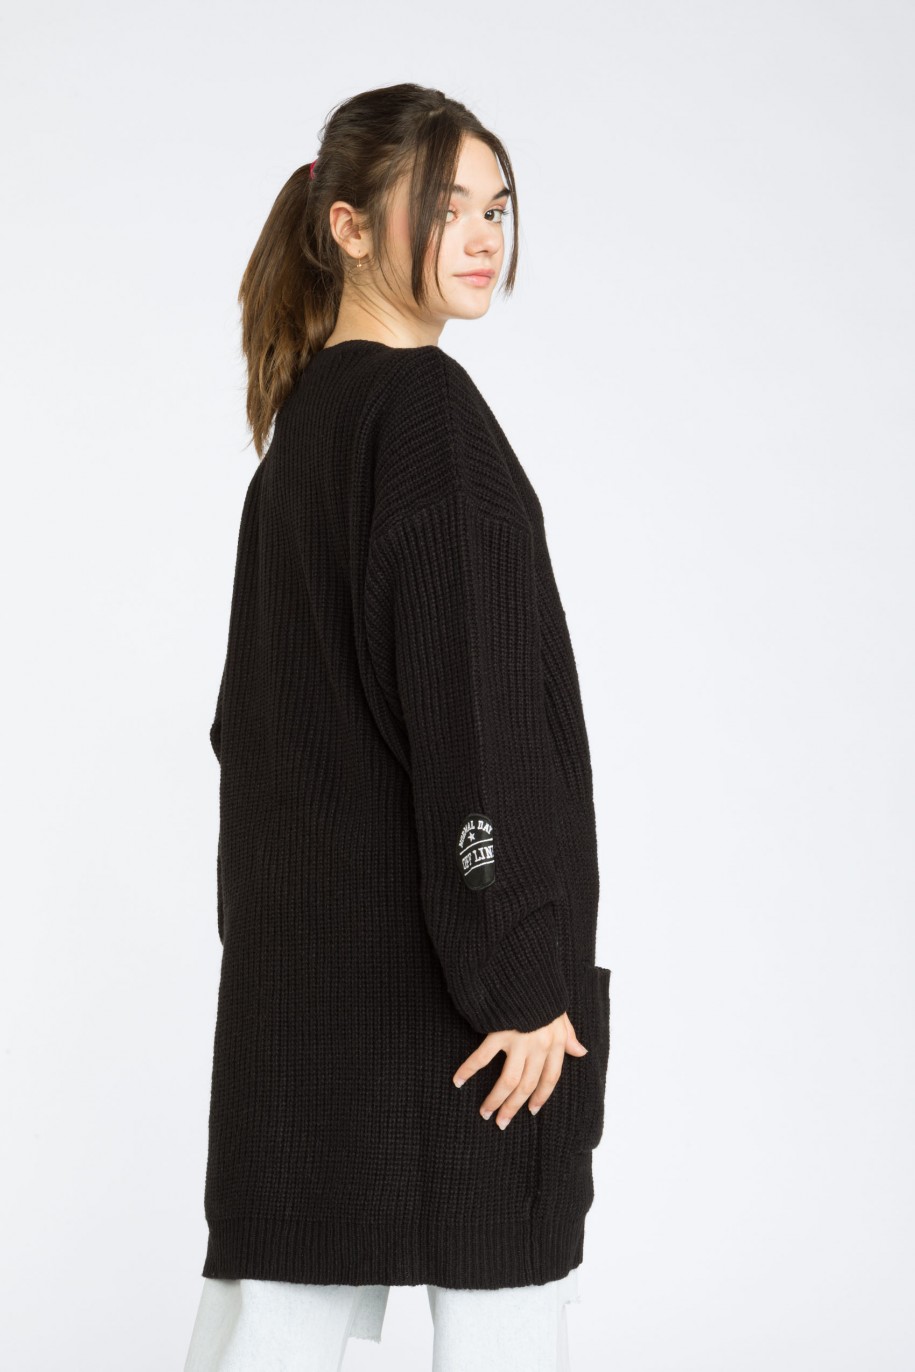 Czarny przedłużany sweter kardigan SCHOOL GIRL - 39171